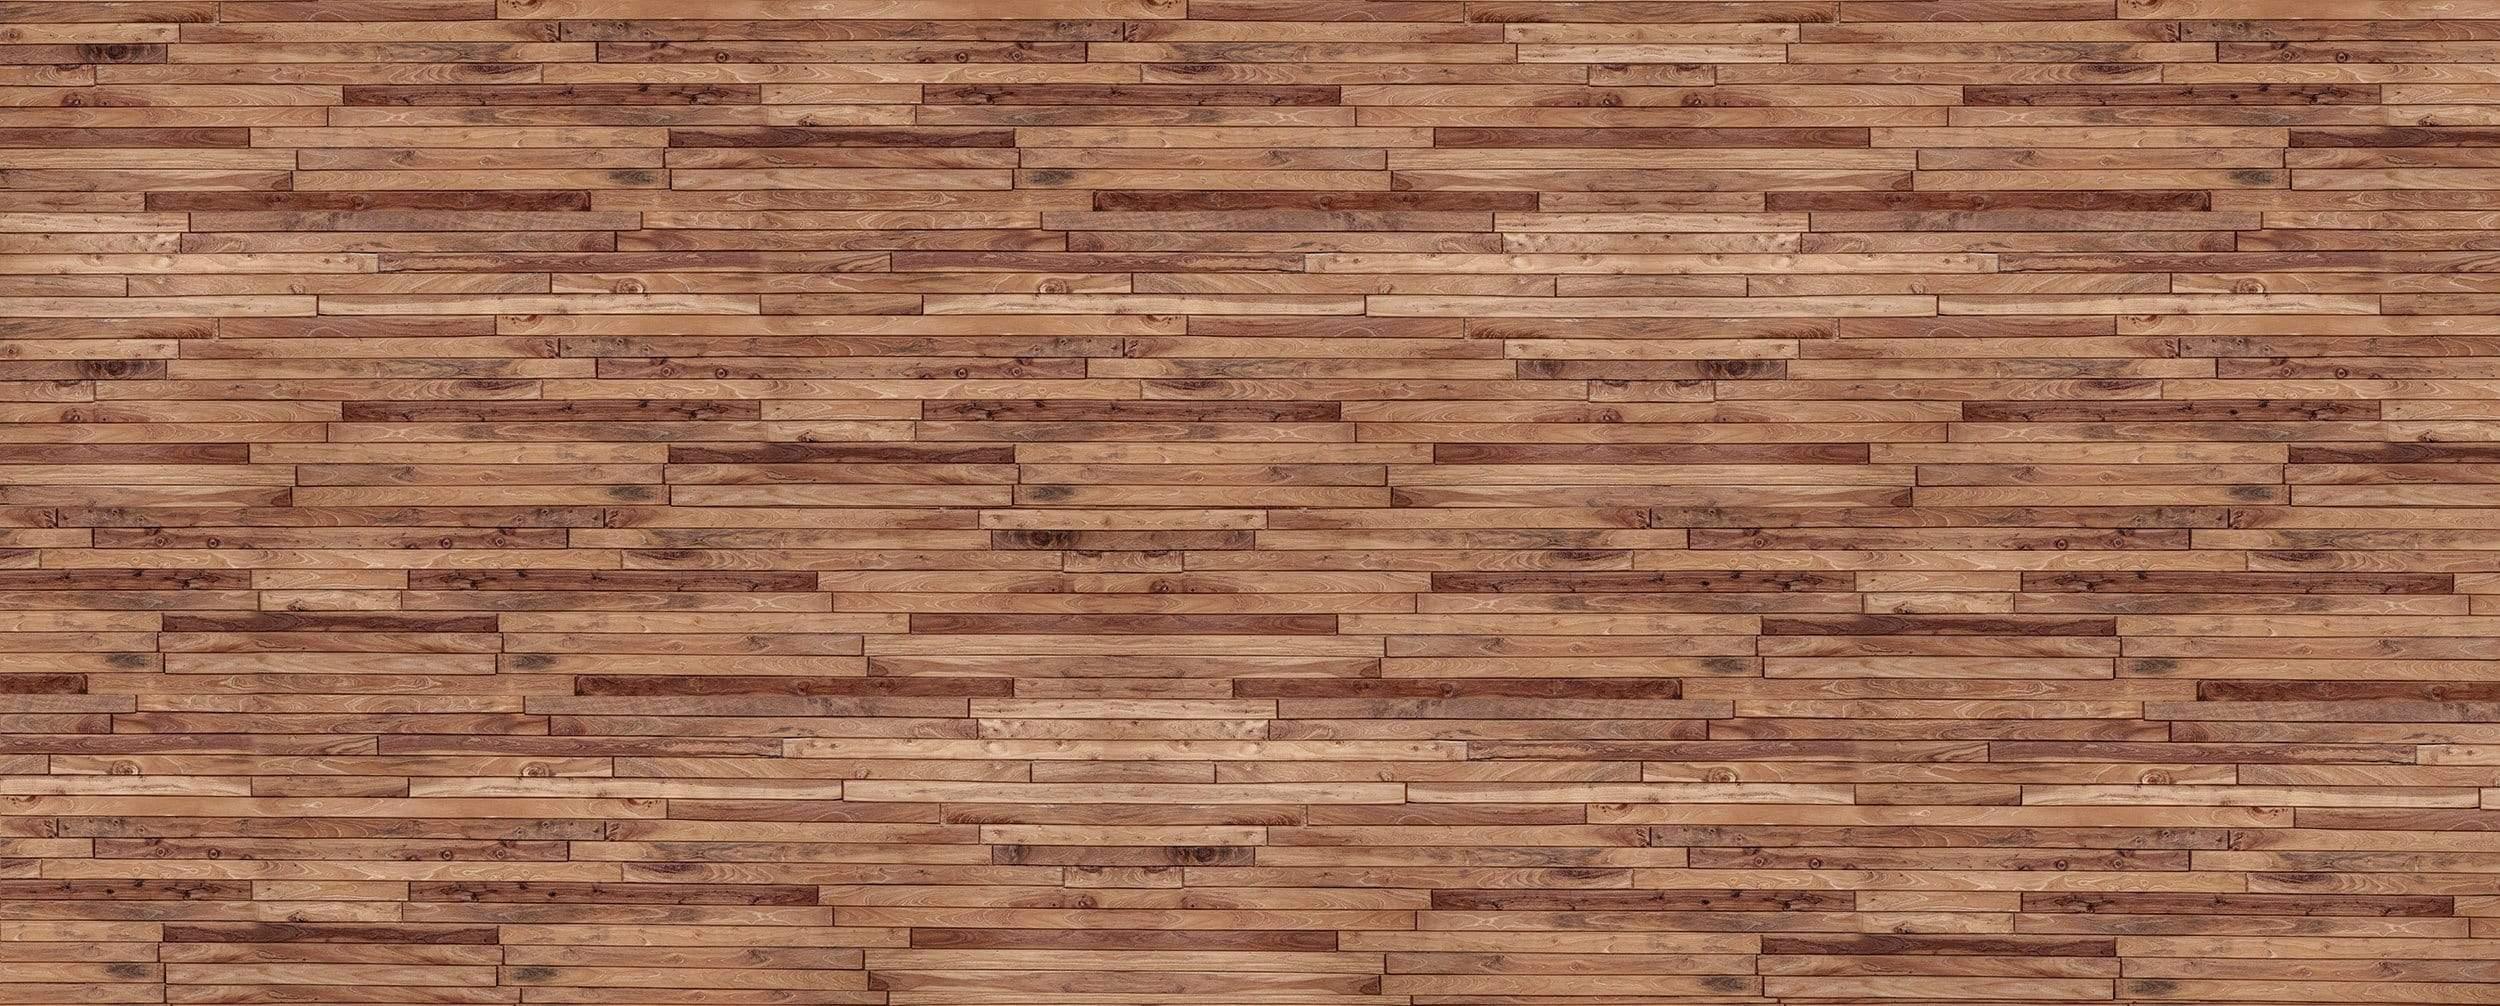 Horizontal Wood panels knotty: GigaPixel Image